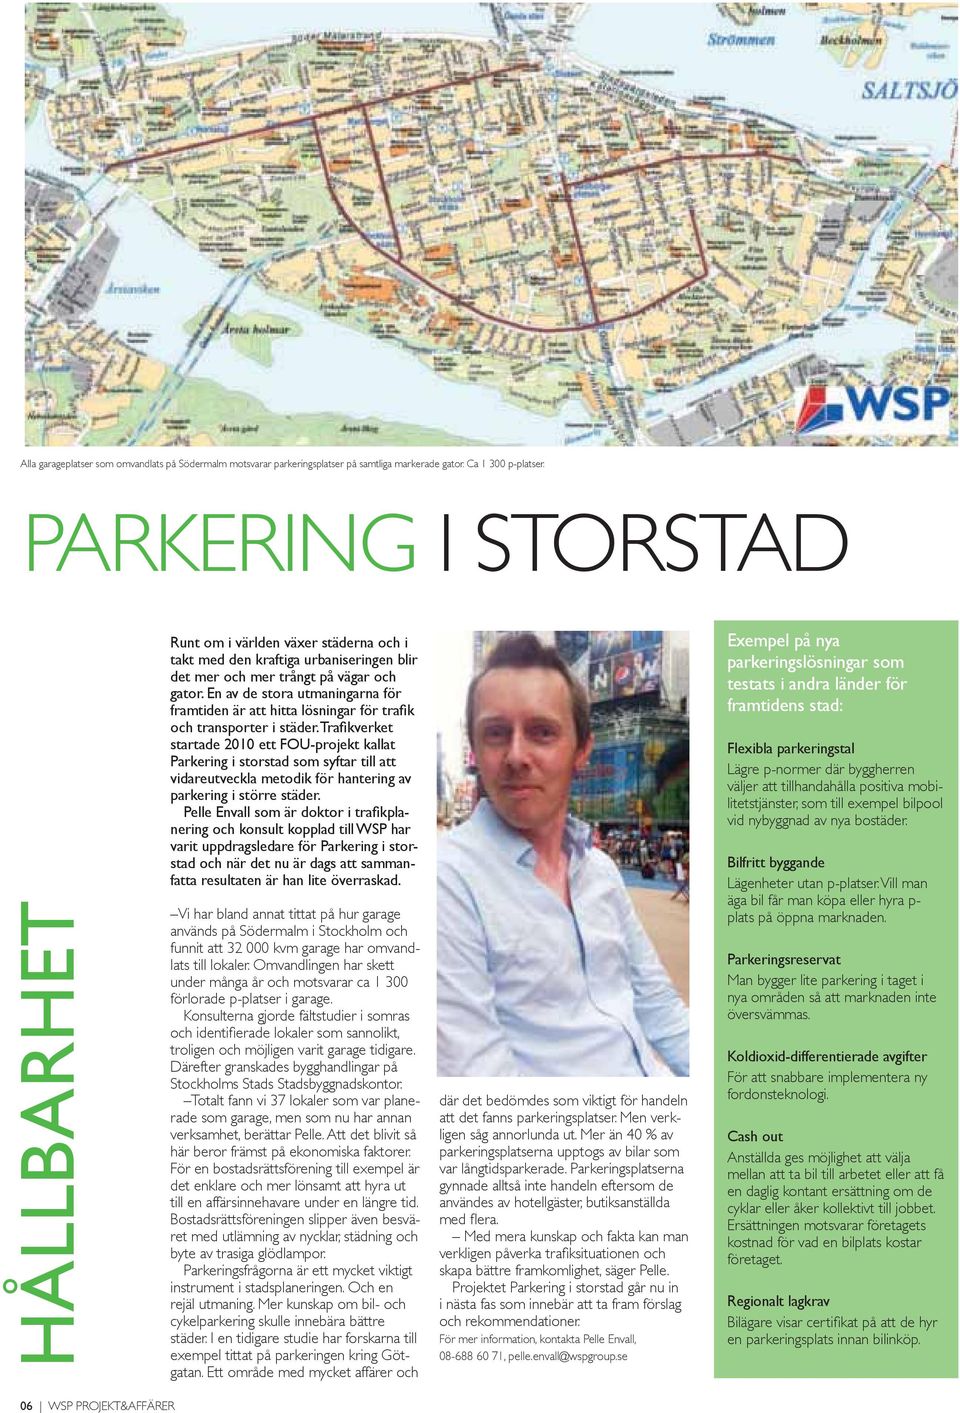 En av de stora utmaningarna för startade 2010 ett FOU-projekt kallat Parkering i storstad som syftar till att vidareutveckla metodik för hantering av parkering i större städer.